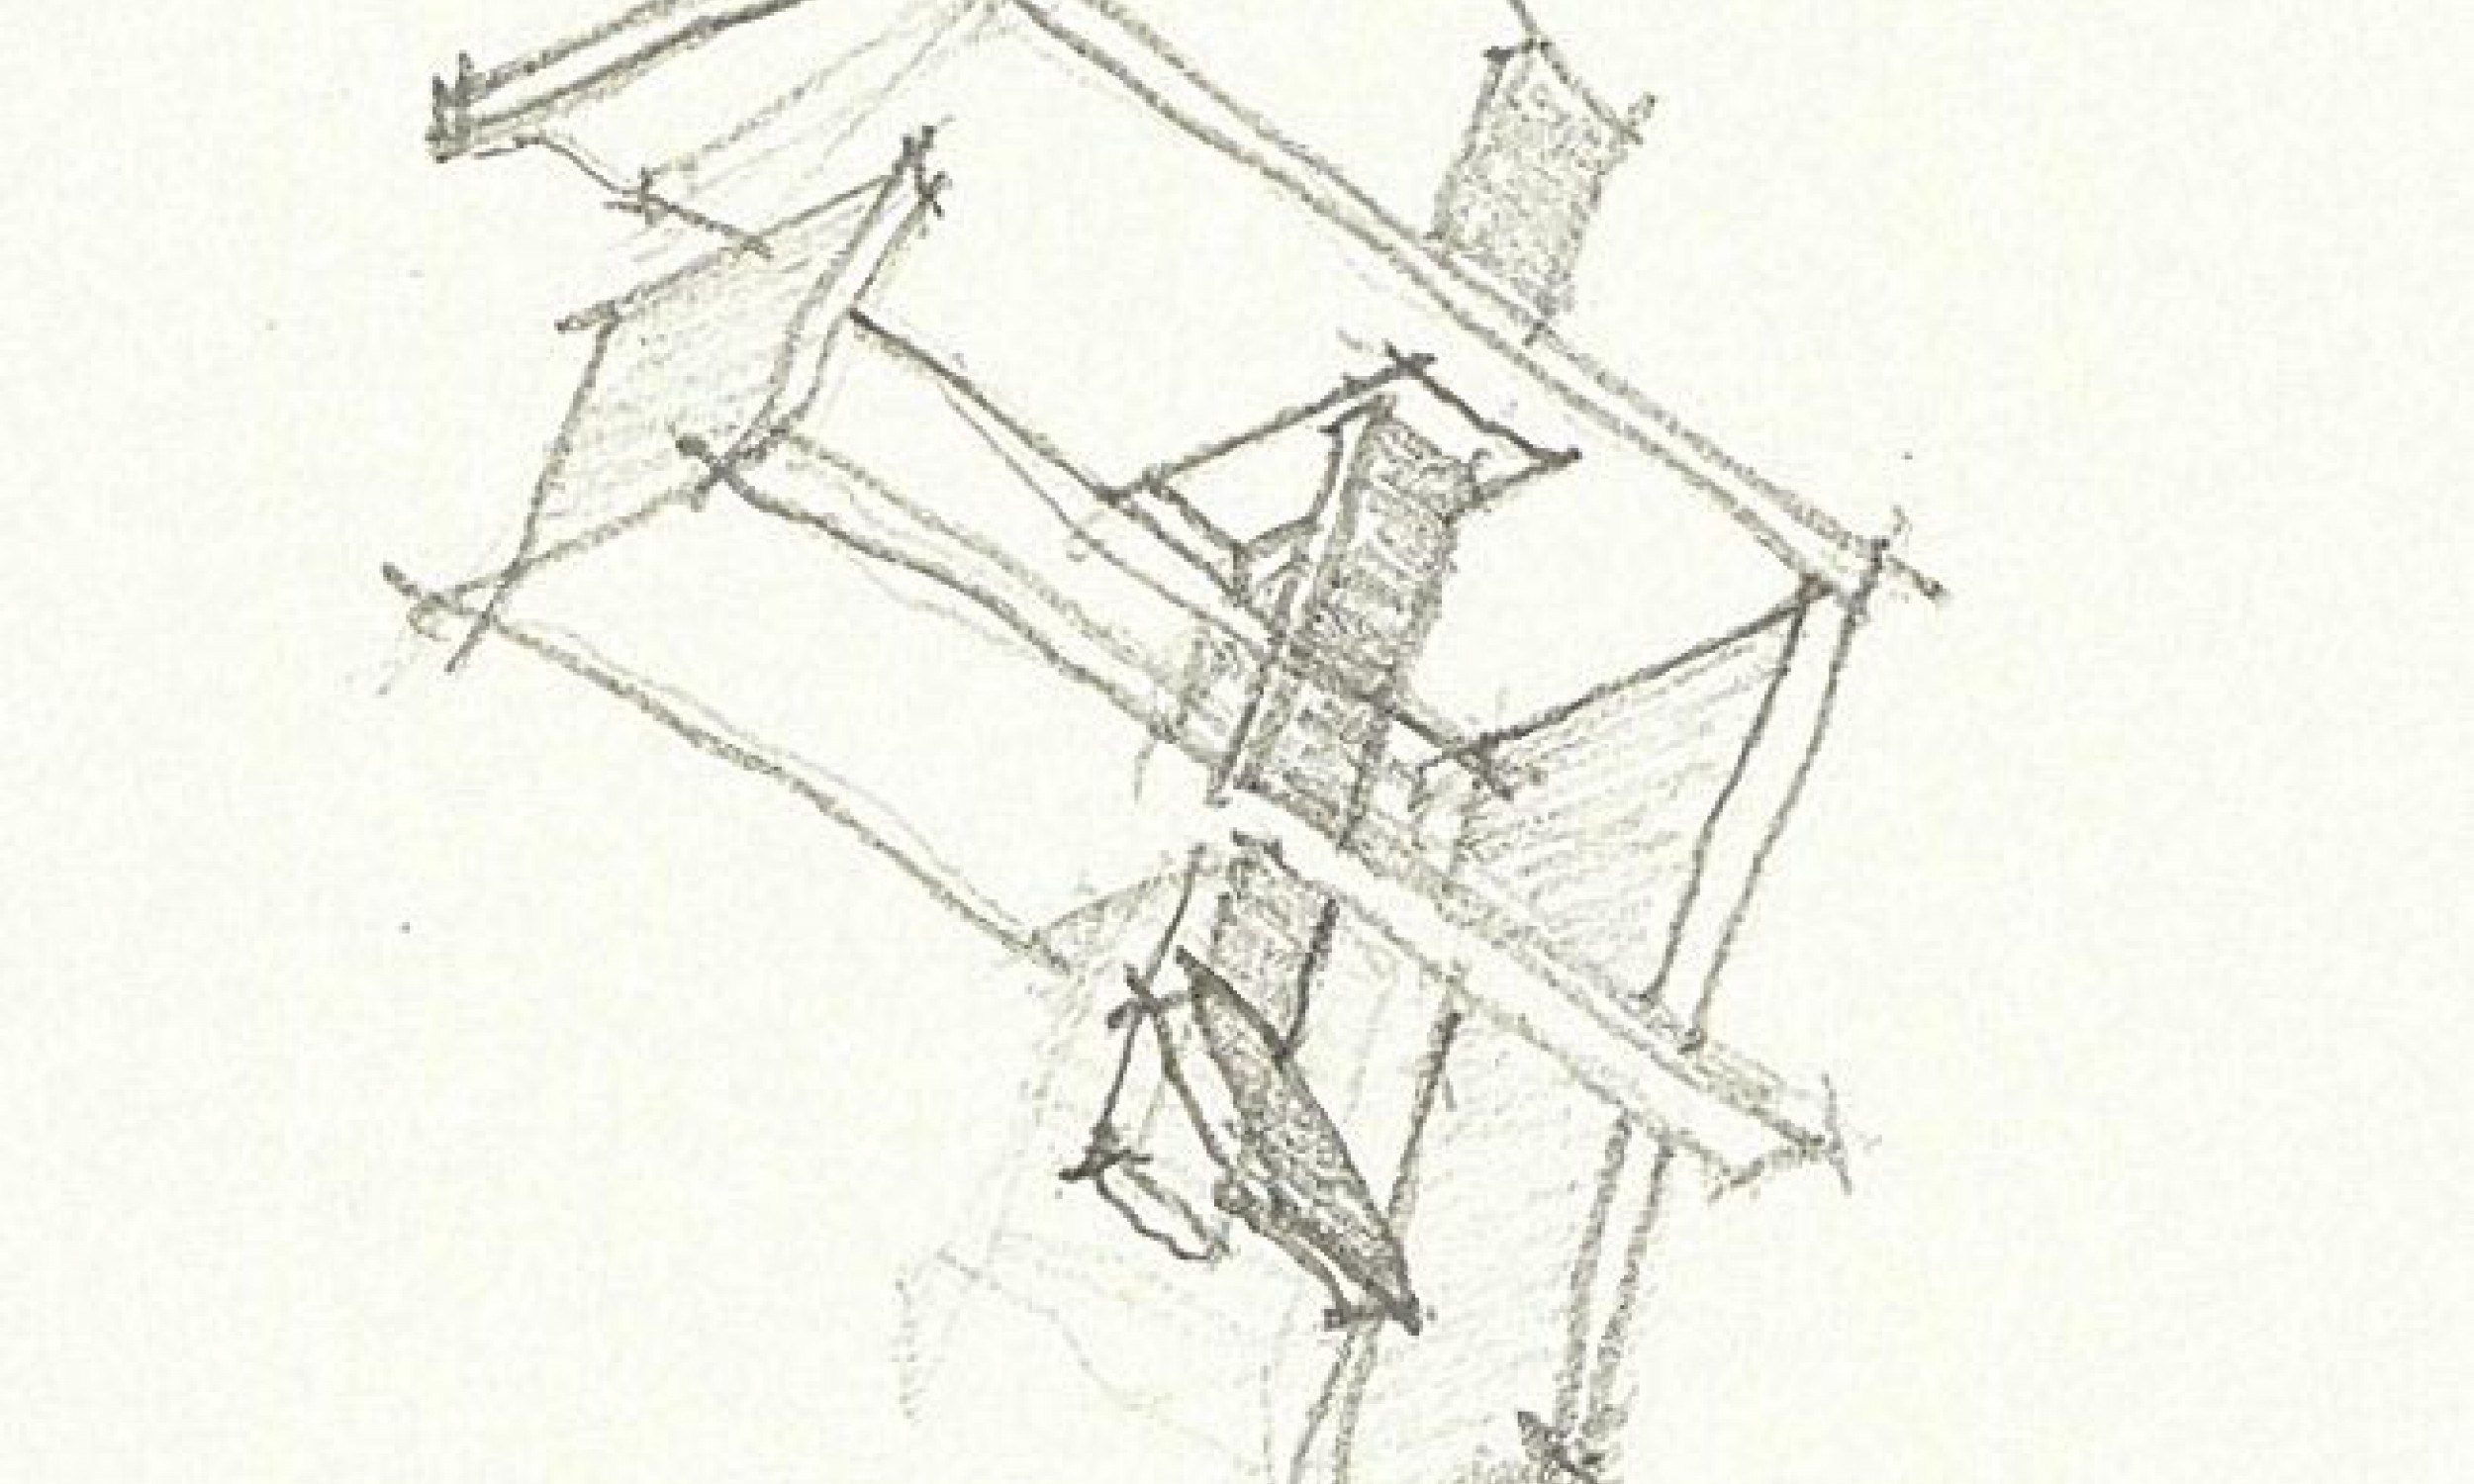 Architect sketch, Architecture, Design idea, pencil sketch